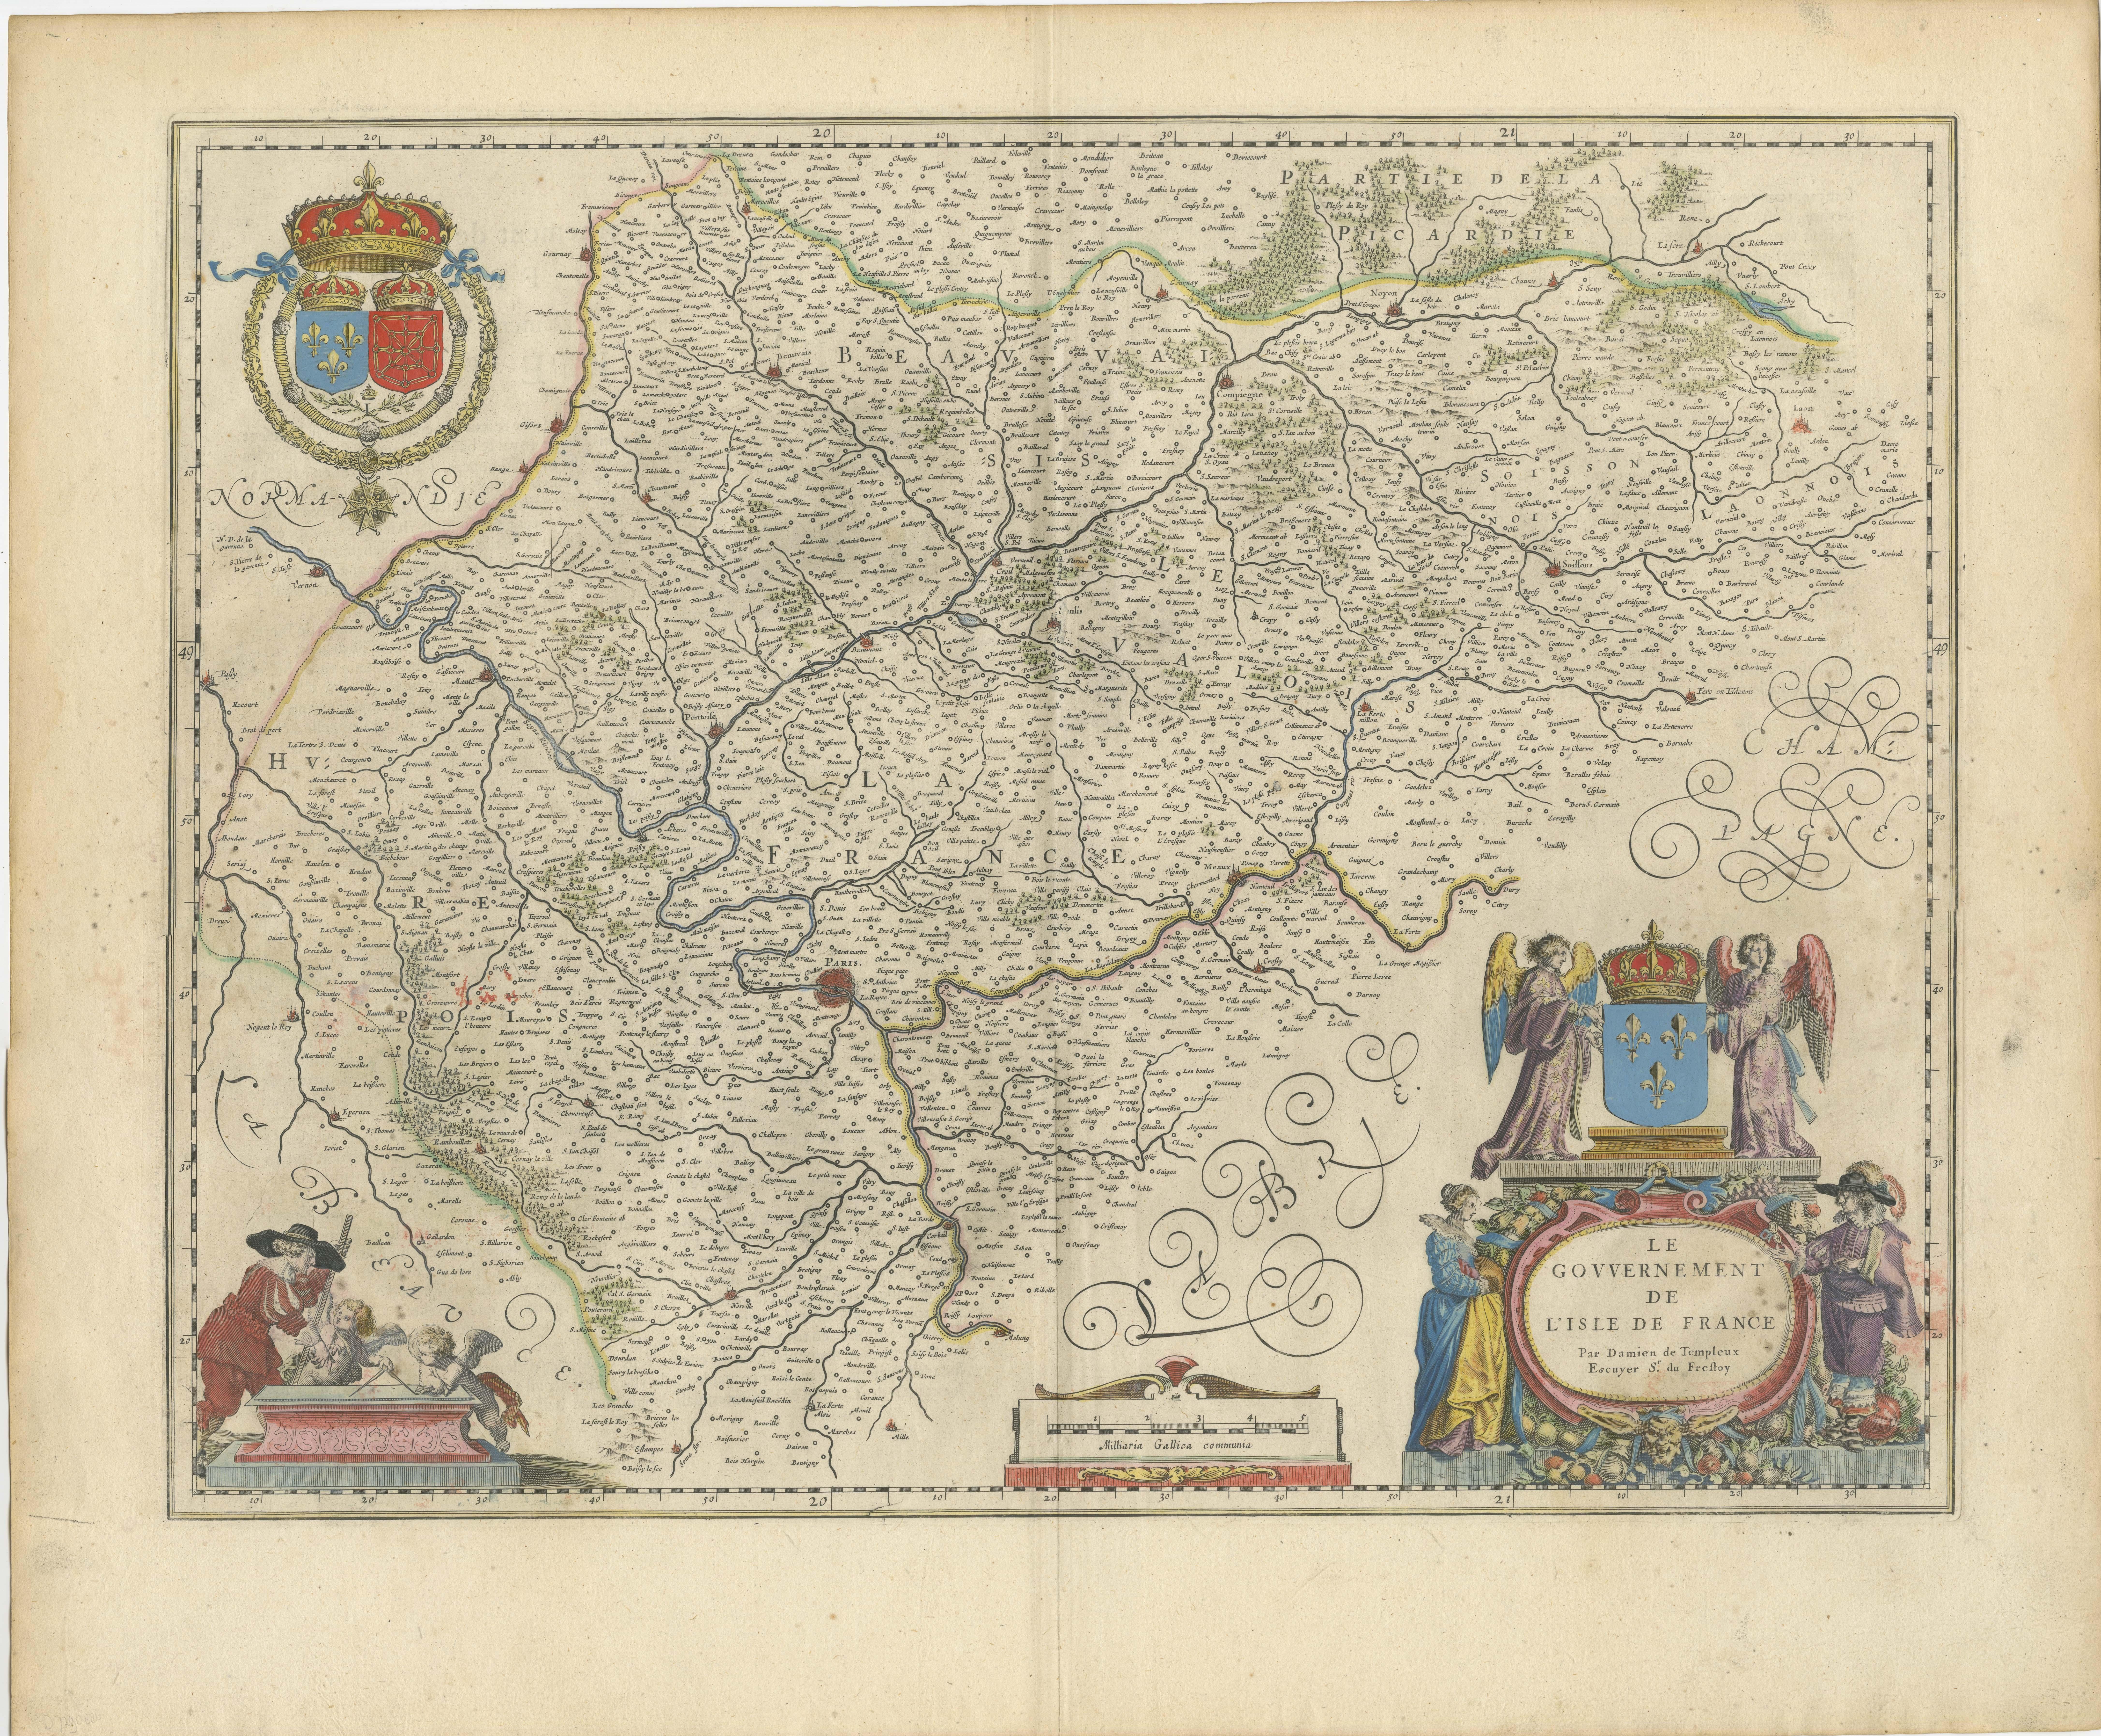 This original antique map titled 